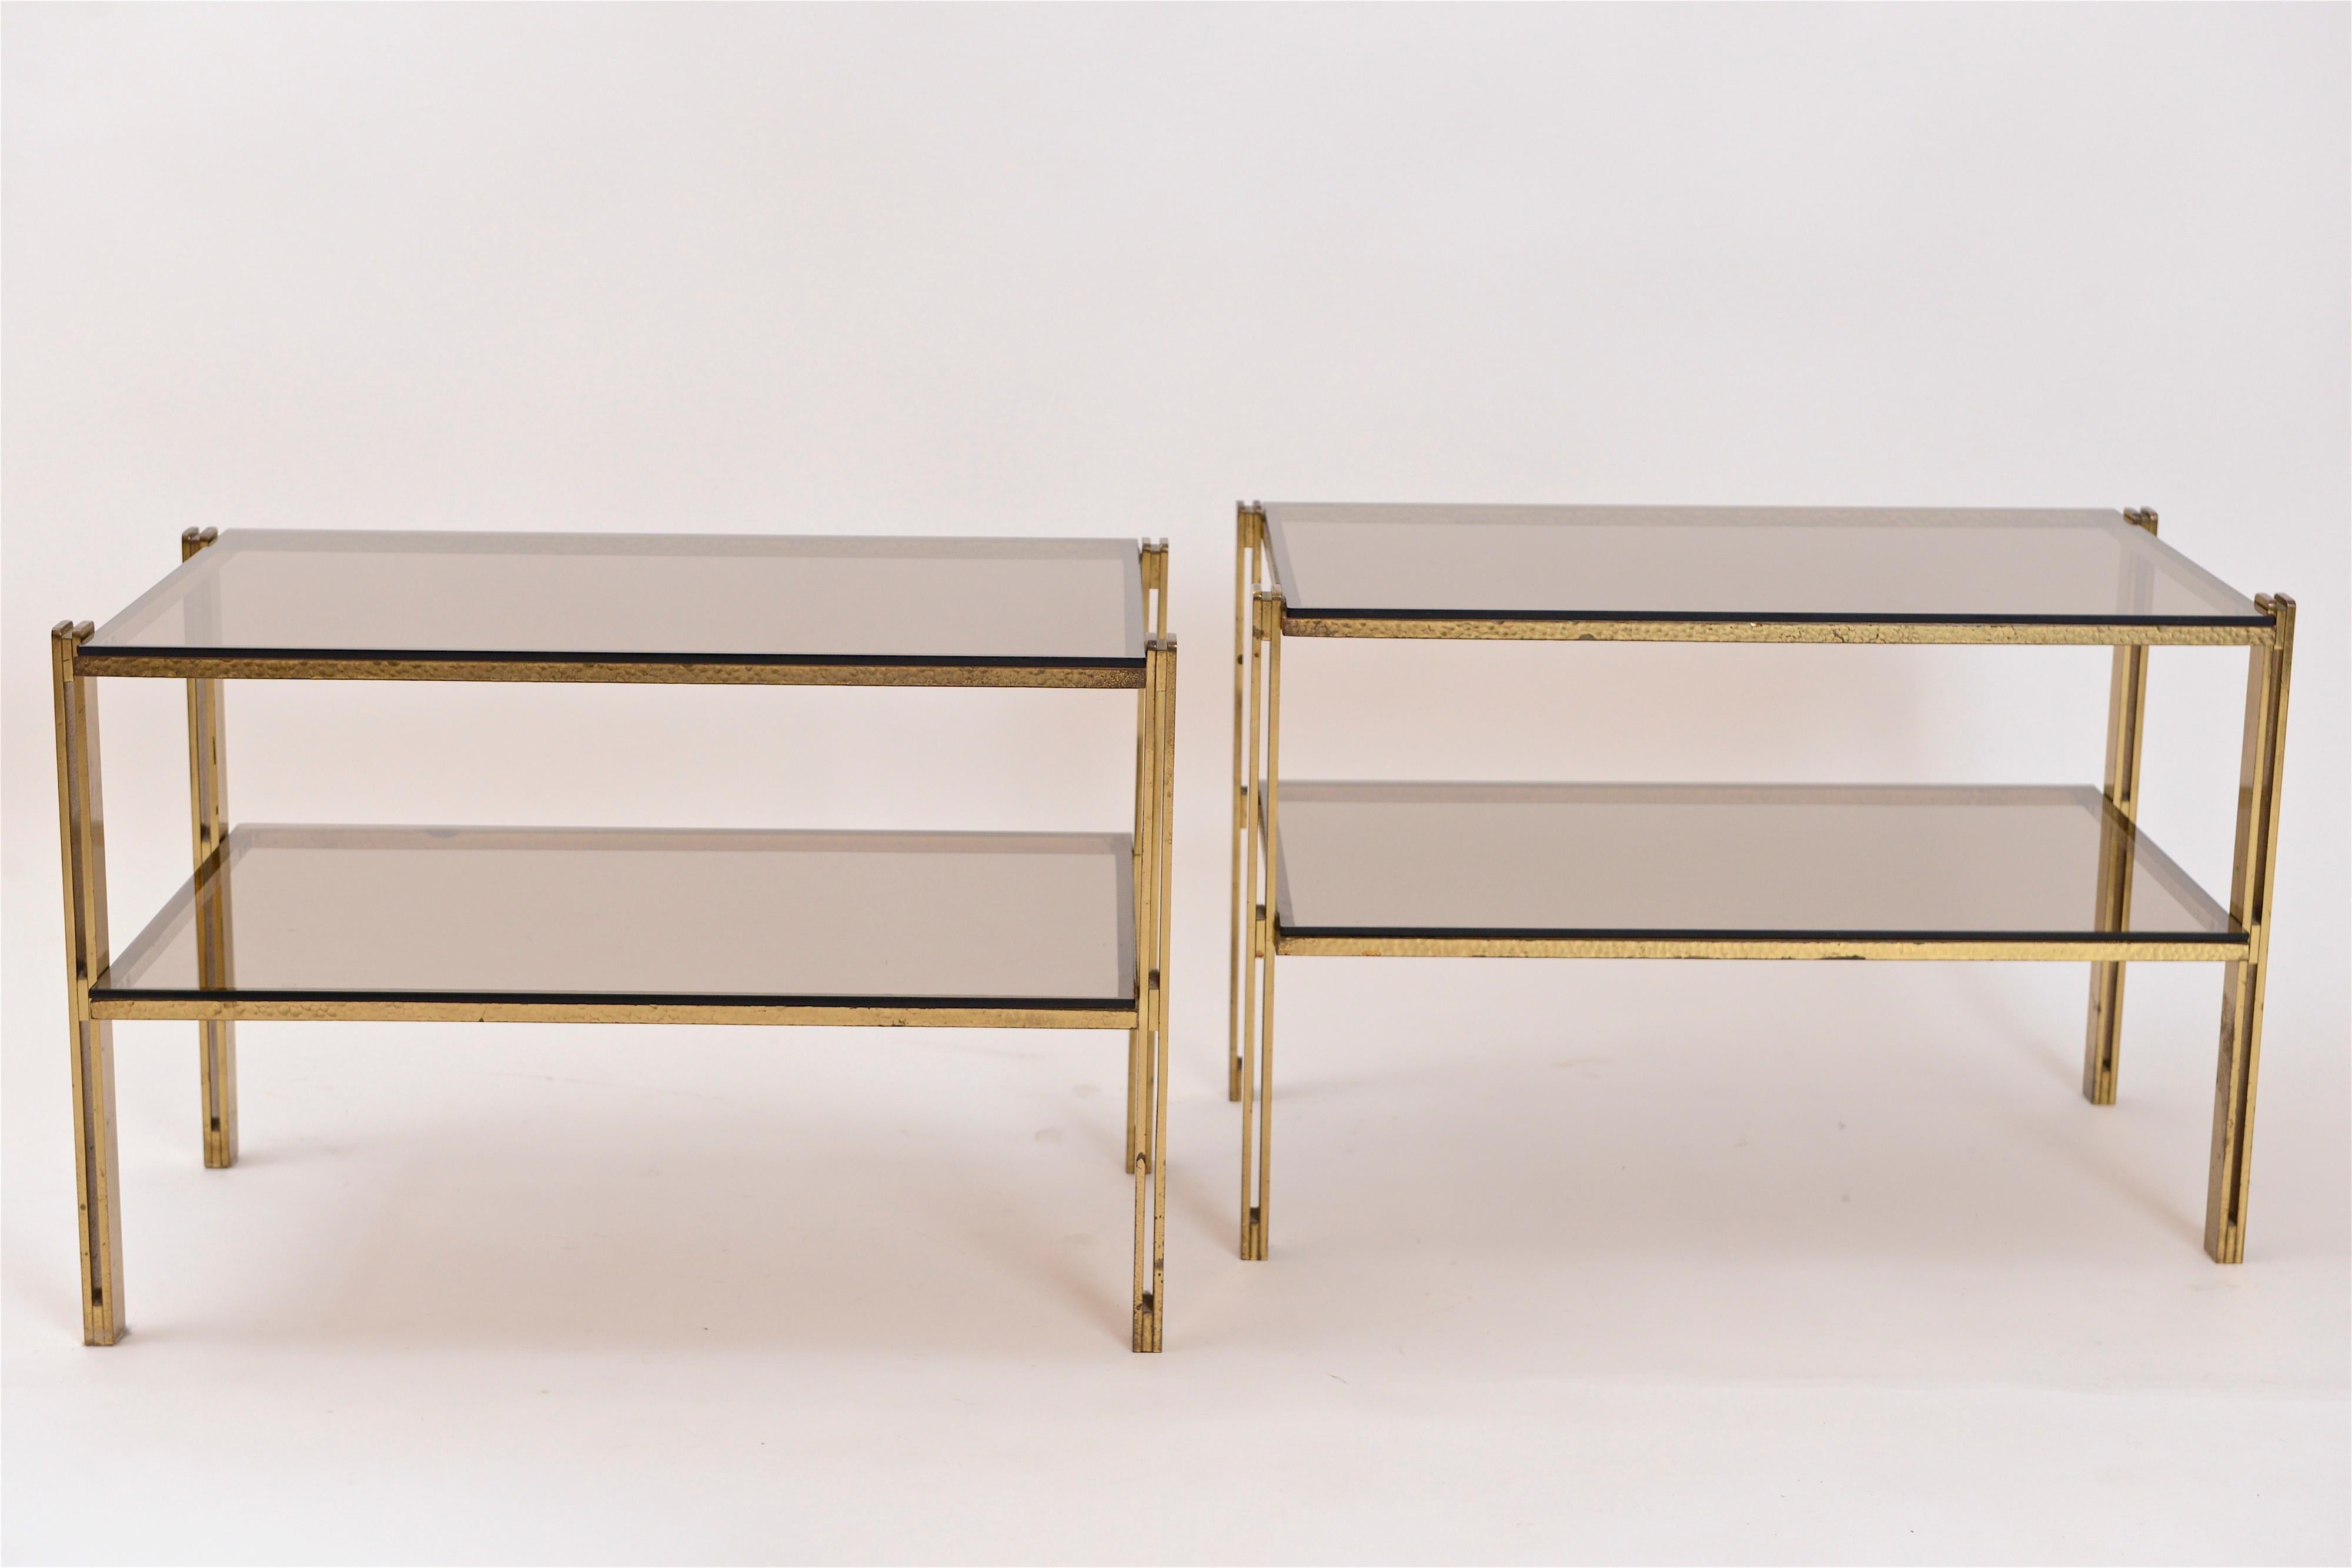 Ein fantastisches Paar Beistelltische aus Messing und Fumé-Glas, das Osvaldo Borsani zugeschrieben wird. Diese zweistöckigen Tische sind aus den hochwertigsten Materialien gefertigt... massivem, gehämmertem Messing und originellen Fumé-Glaseinsätzen.